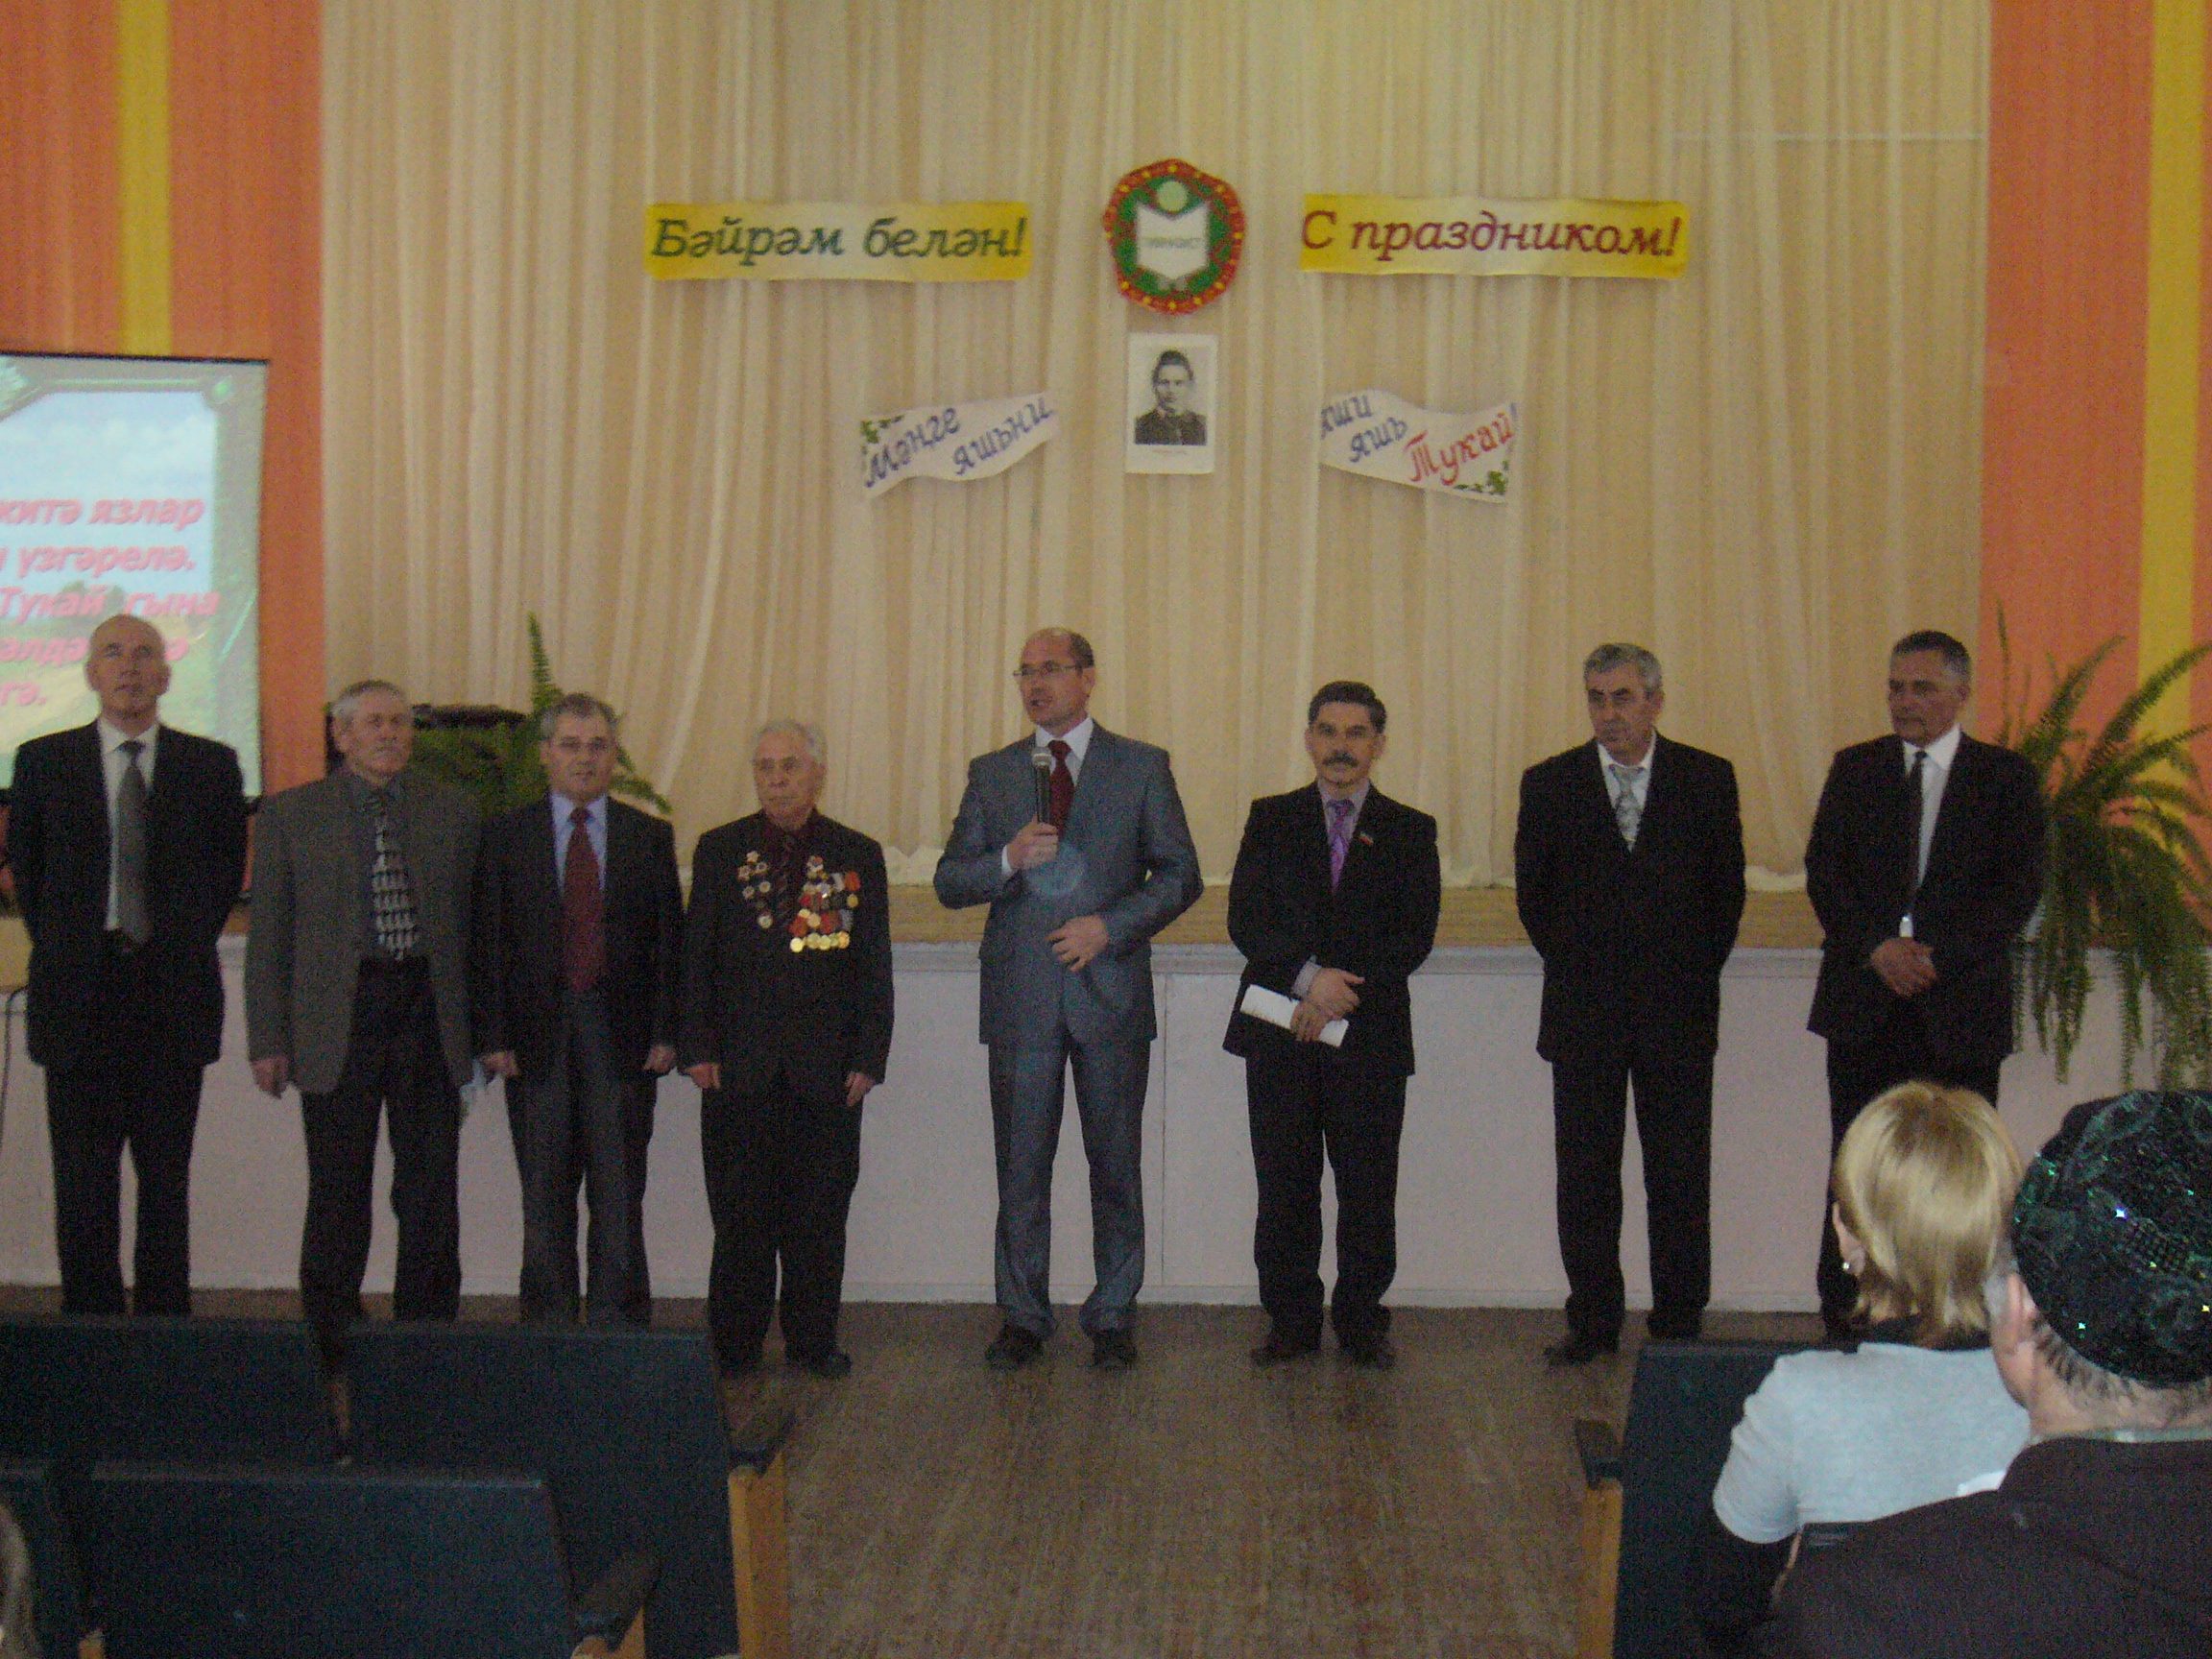 Празднование 125-летия великого татарского поэта Габдуллы Тукая в Удмуртии